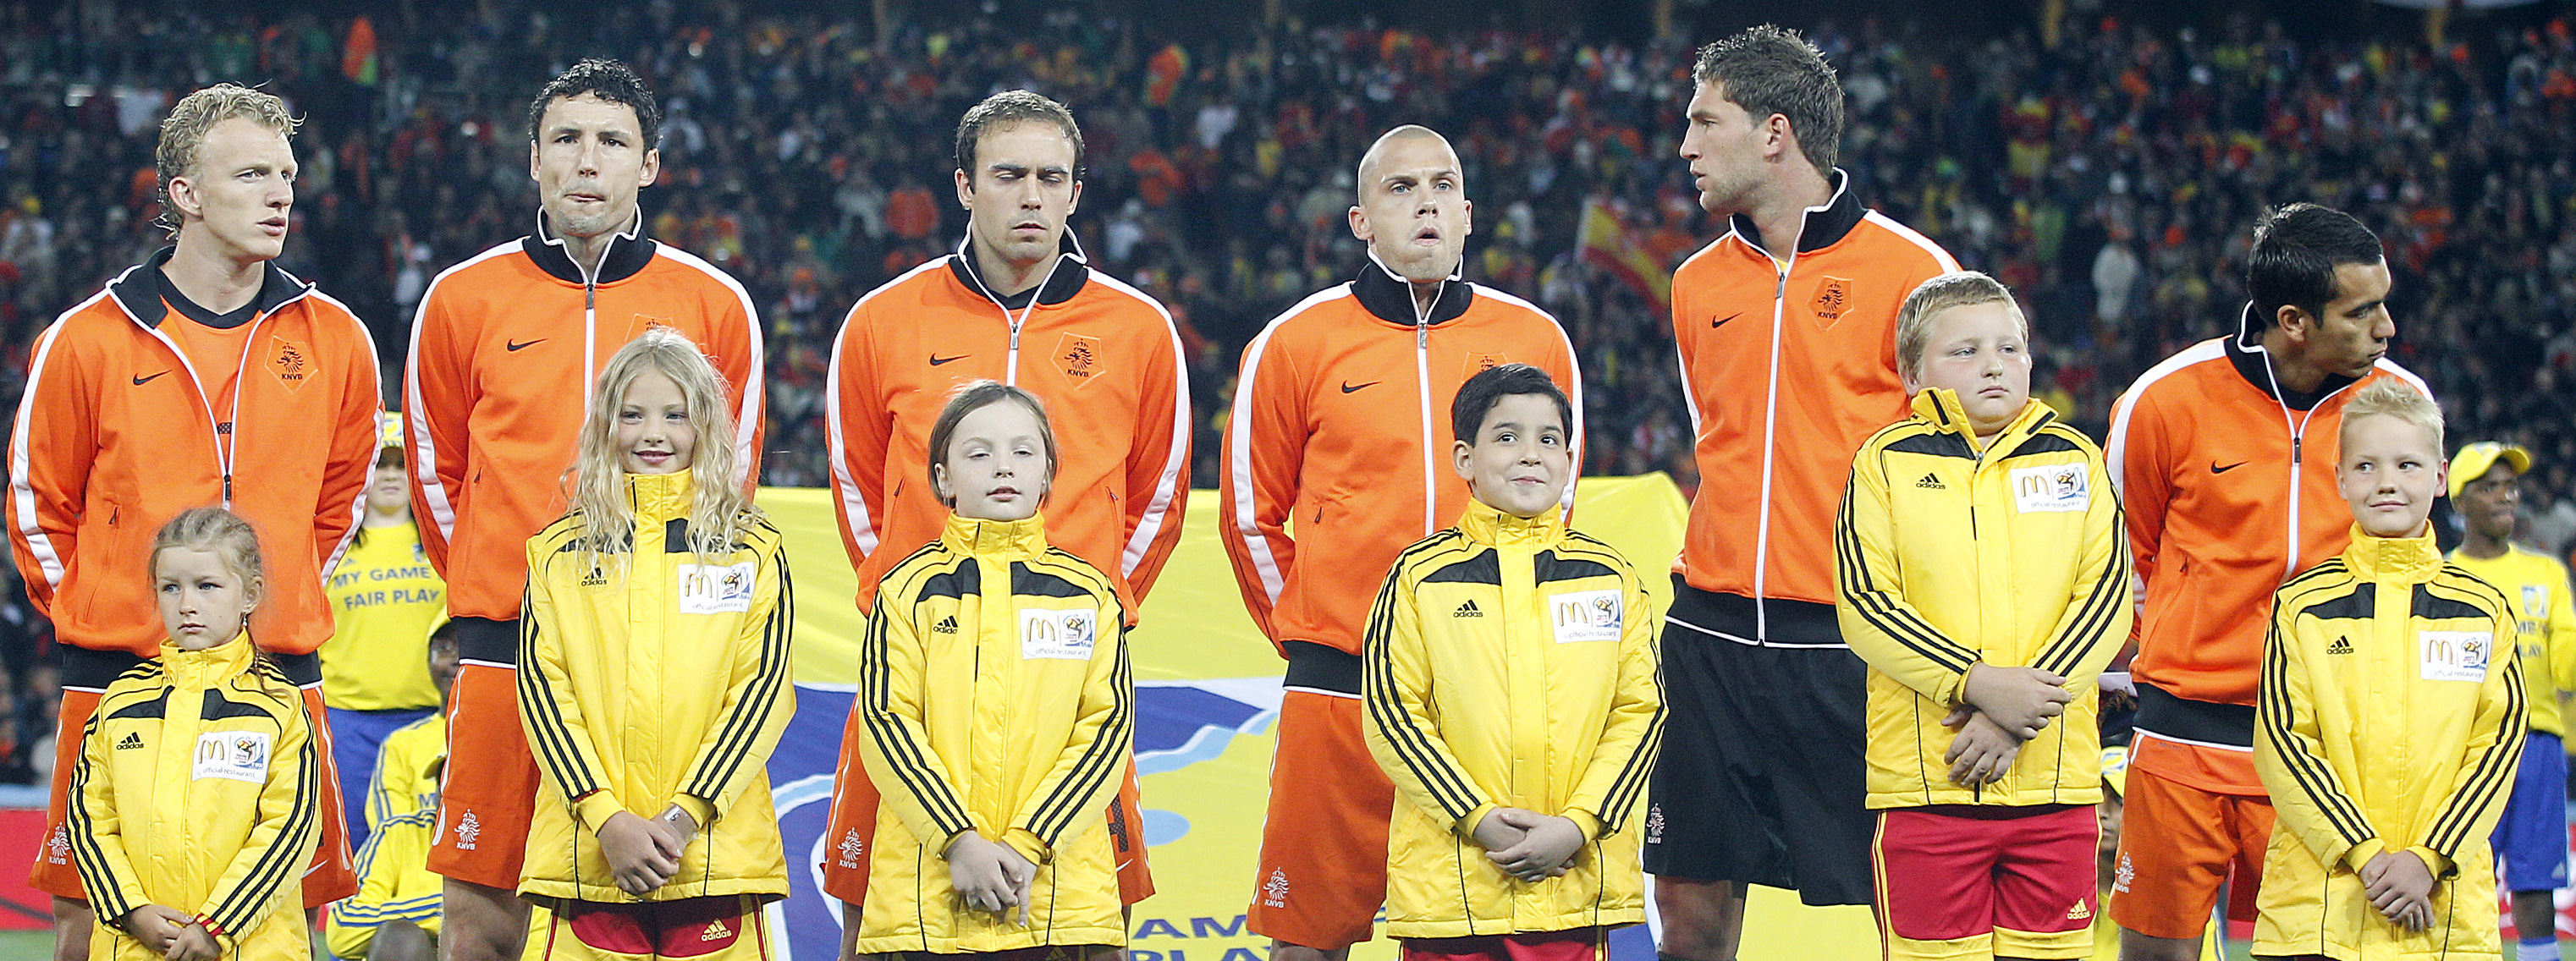 Dirk Kuijt, Mark van Bommel, Joris Mathijsen, John Heitinga, Maarten Stekelenburg en Giovanni van Bronckhorst (vlnr) voorafgaand aan de WK-finale van 2010. Inmiddels zijn zij allemaal gestopt of uit beeld bij Oranje.